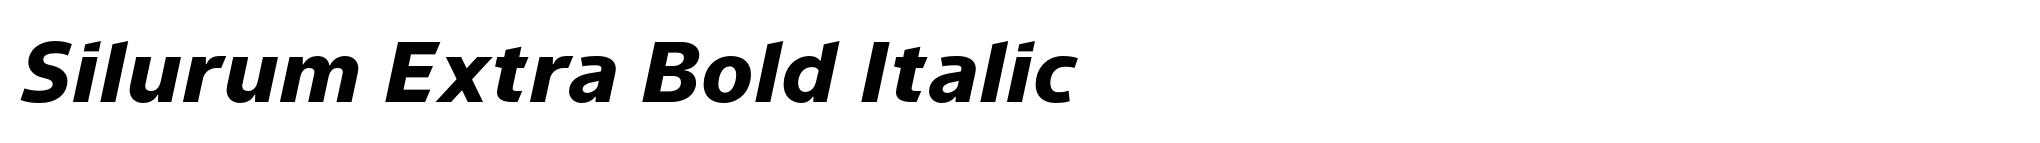 Silurum Extra Bold Italic image